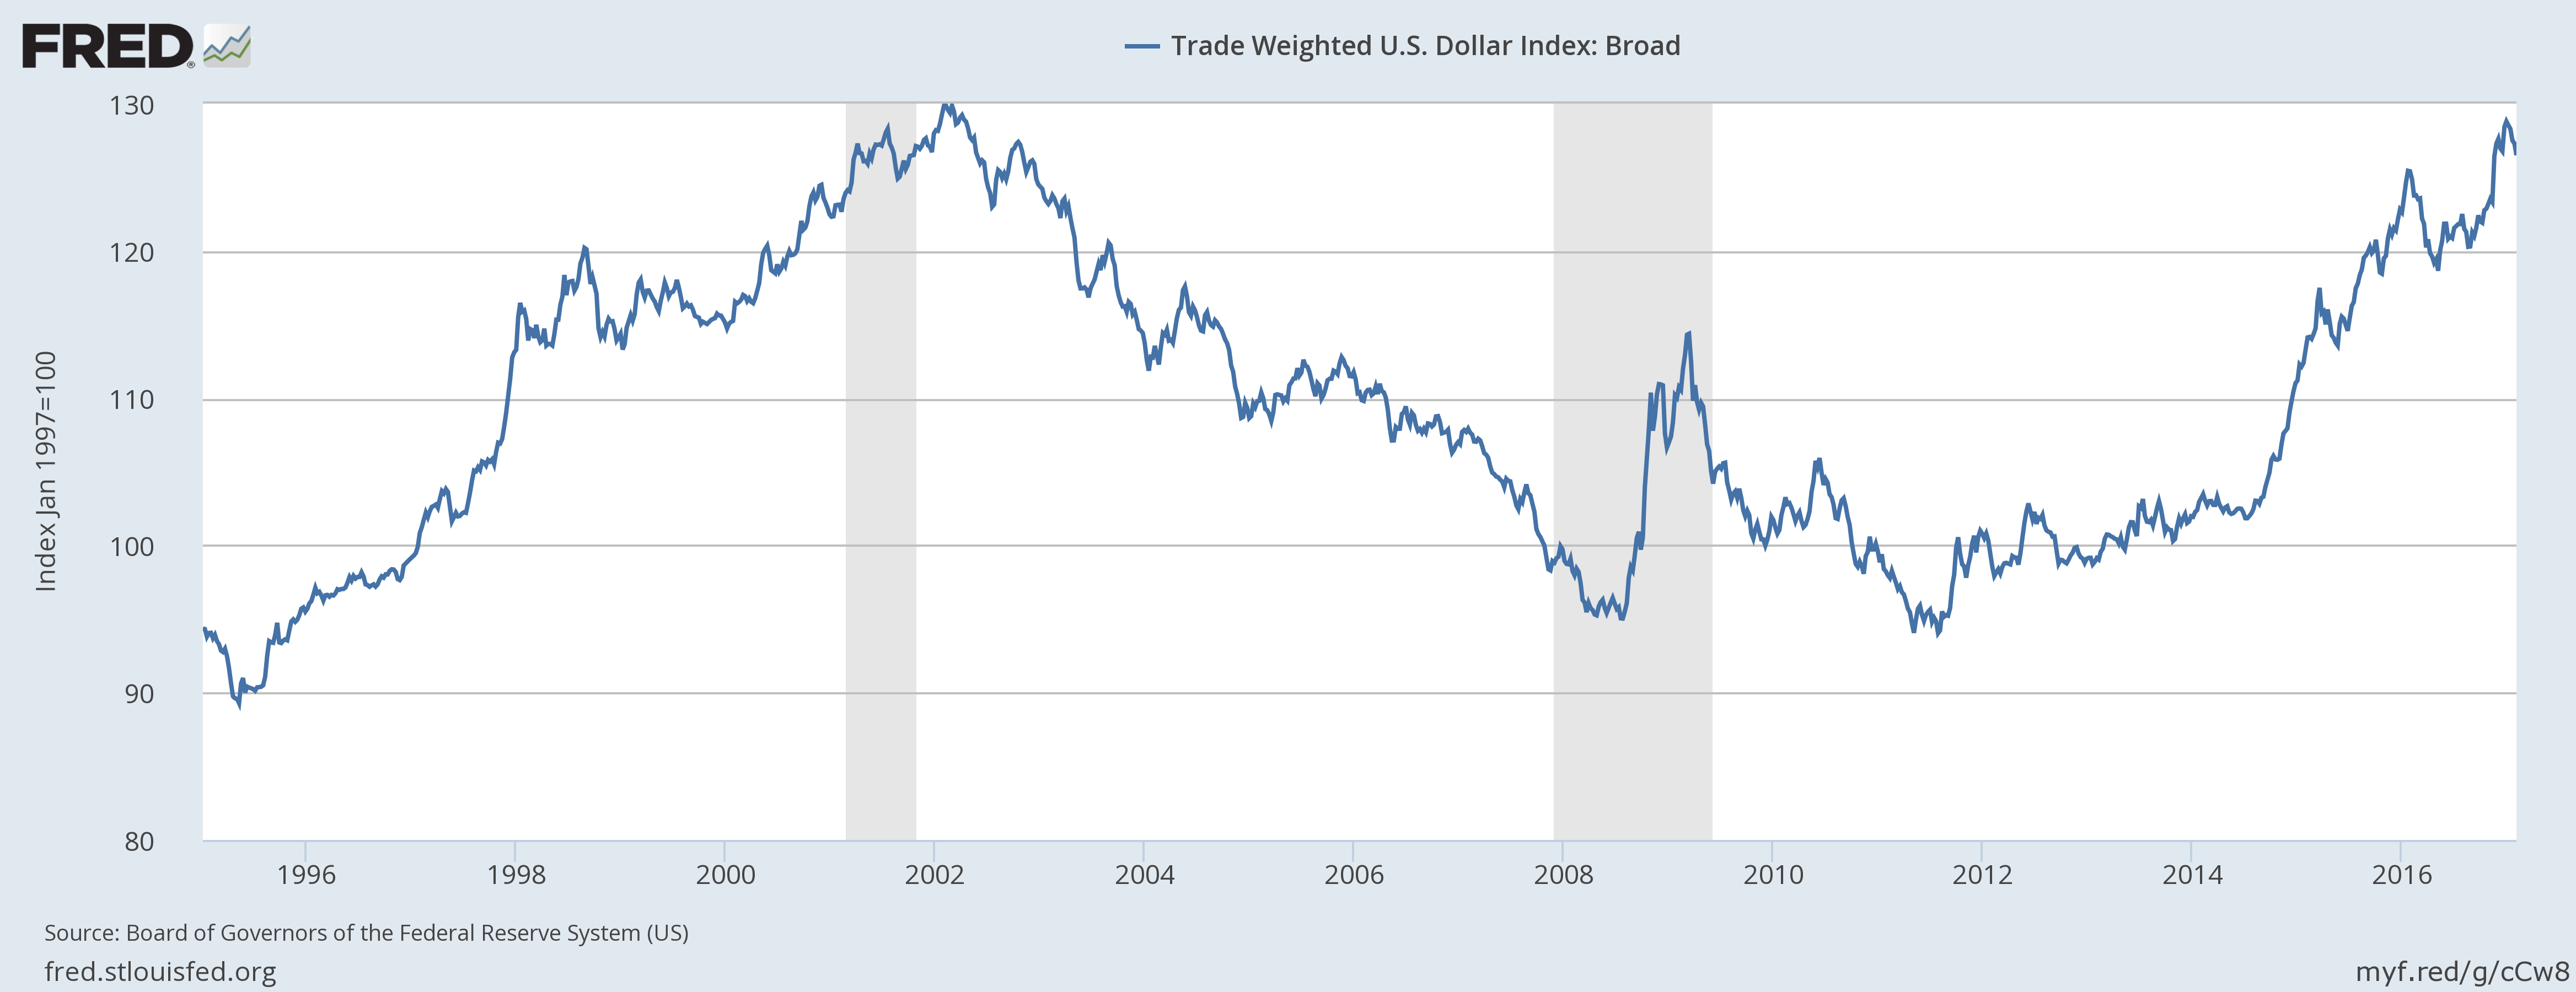 شاخص وزنی دلار آمریکا2